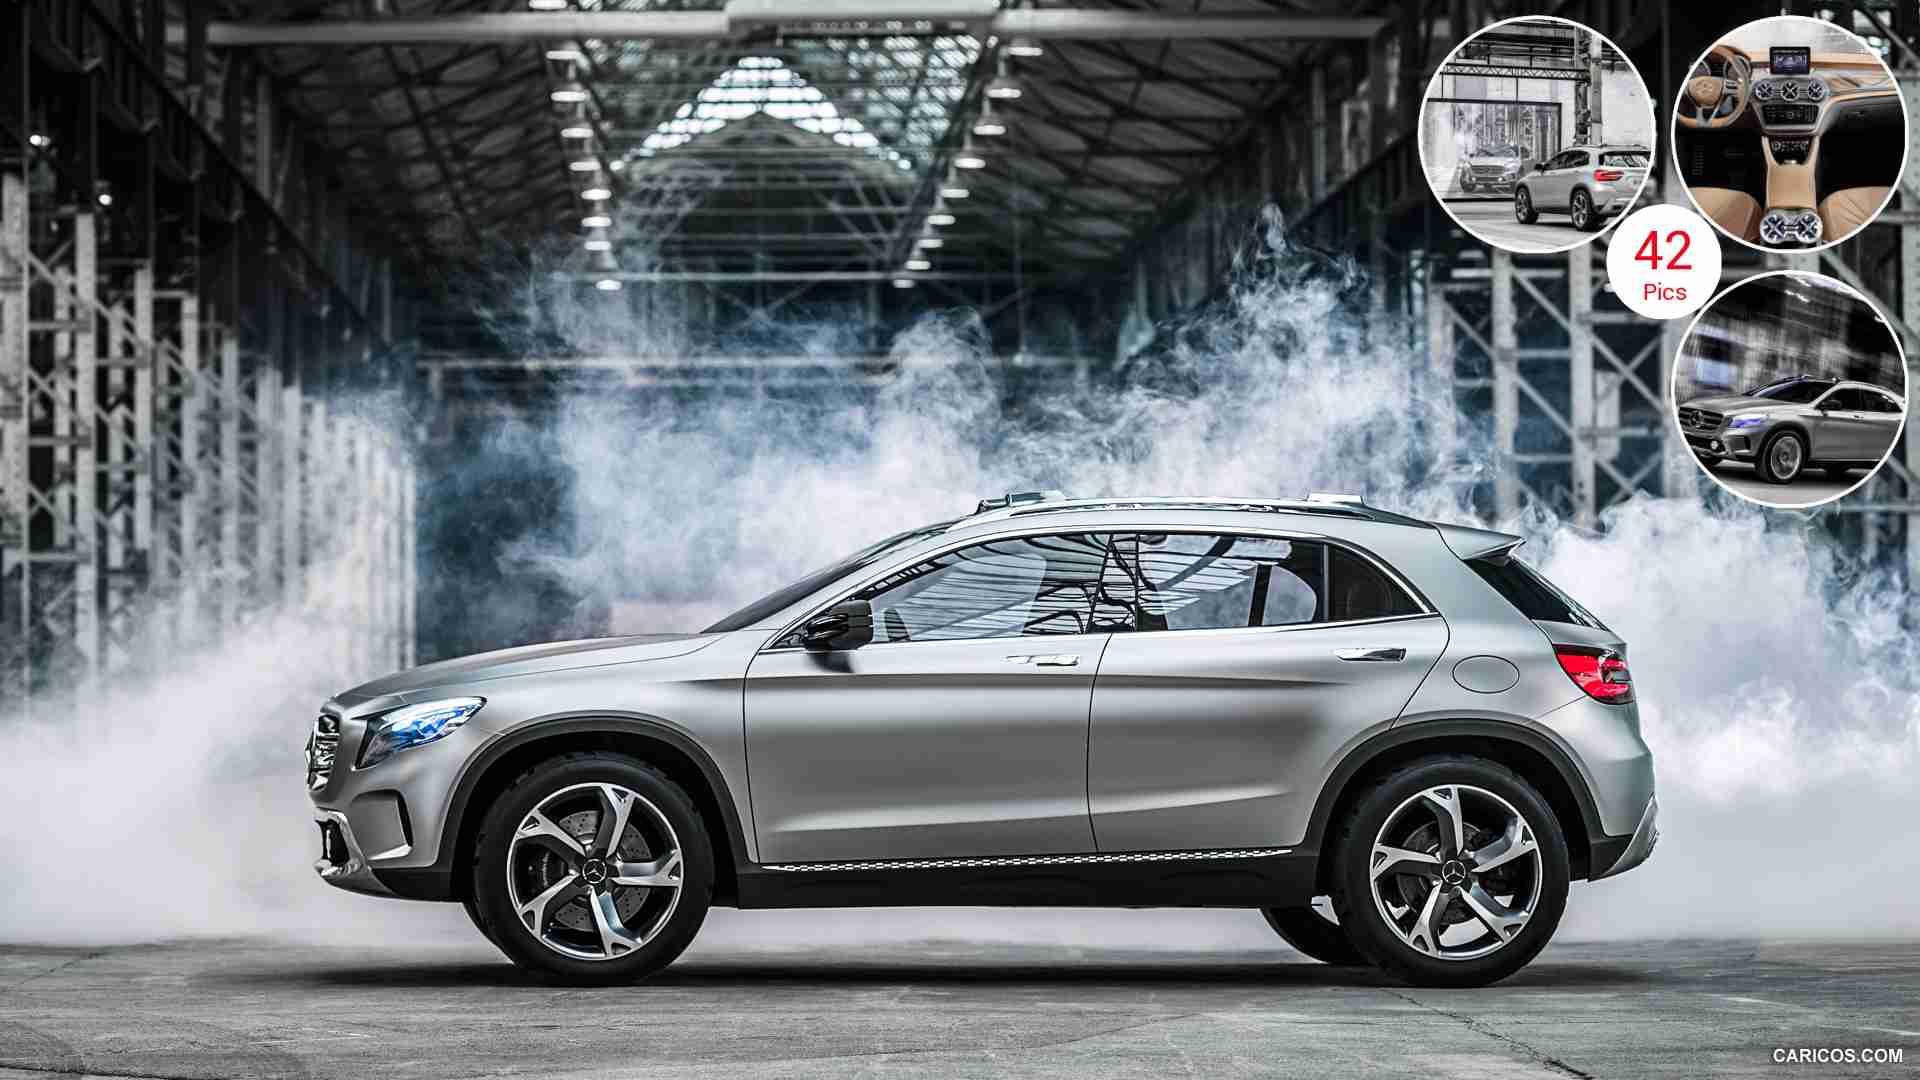 2013 Mercedes Benz GLA Concept - Side HD Wallpaper 1920x1080